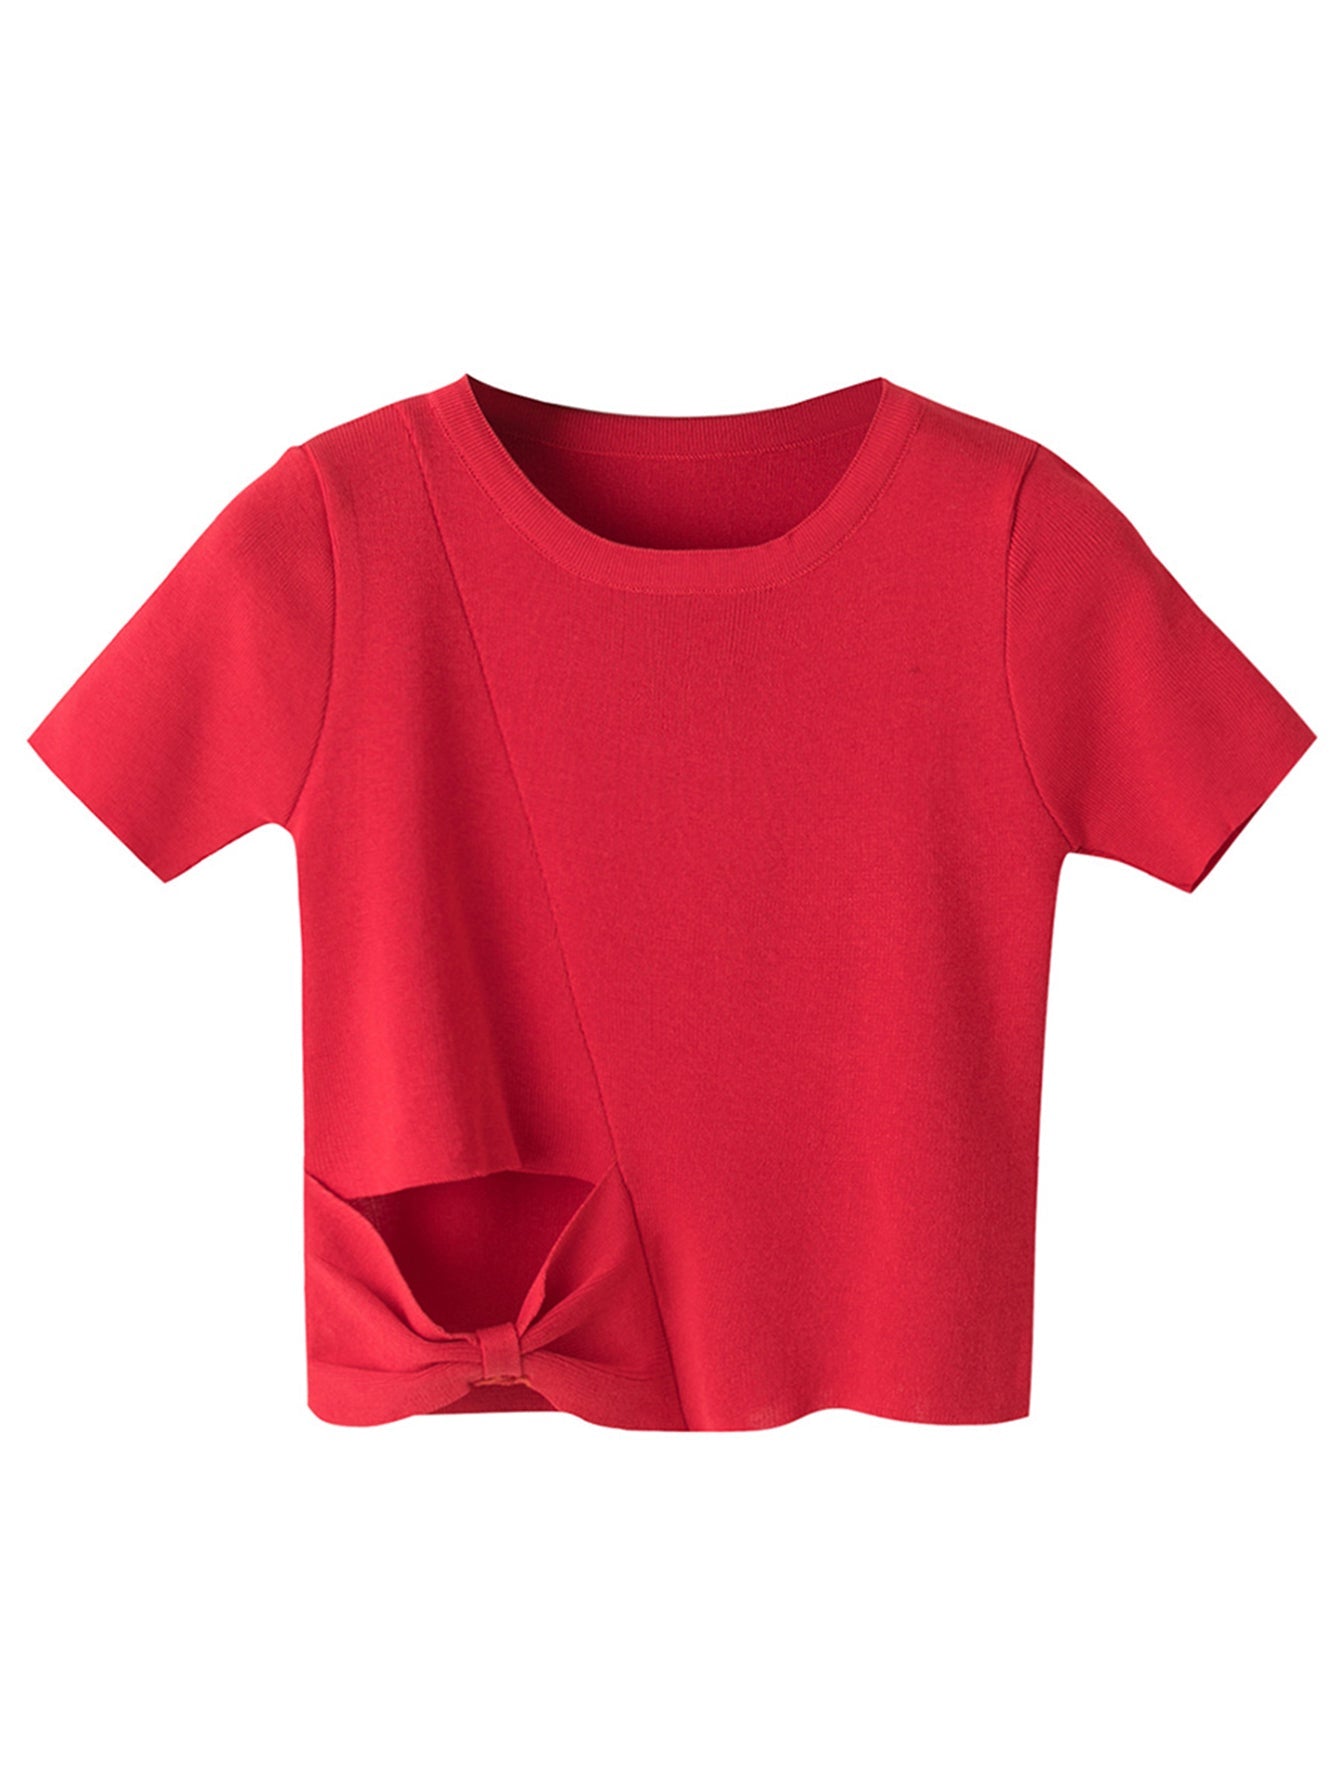 Women's hollow knit tide high waist short crop top irregular T shirt Sai Feel